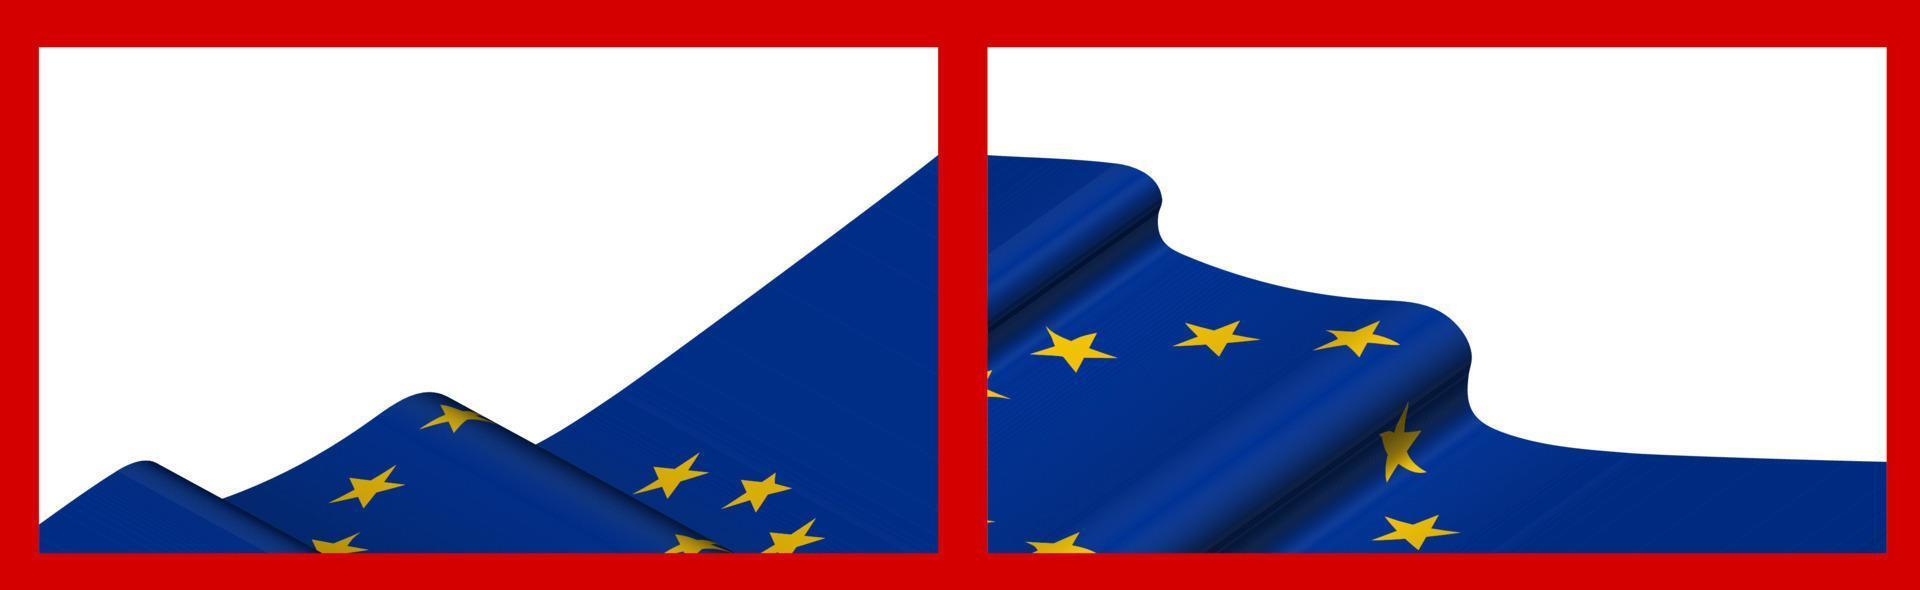 Hintergrund, Vorlage für festliches Design. die flagge der europäischen union weht im wind. realistischer Vektor auf rotem Hintergrund